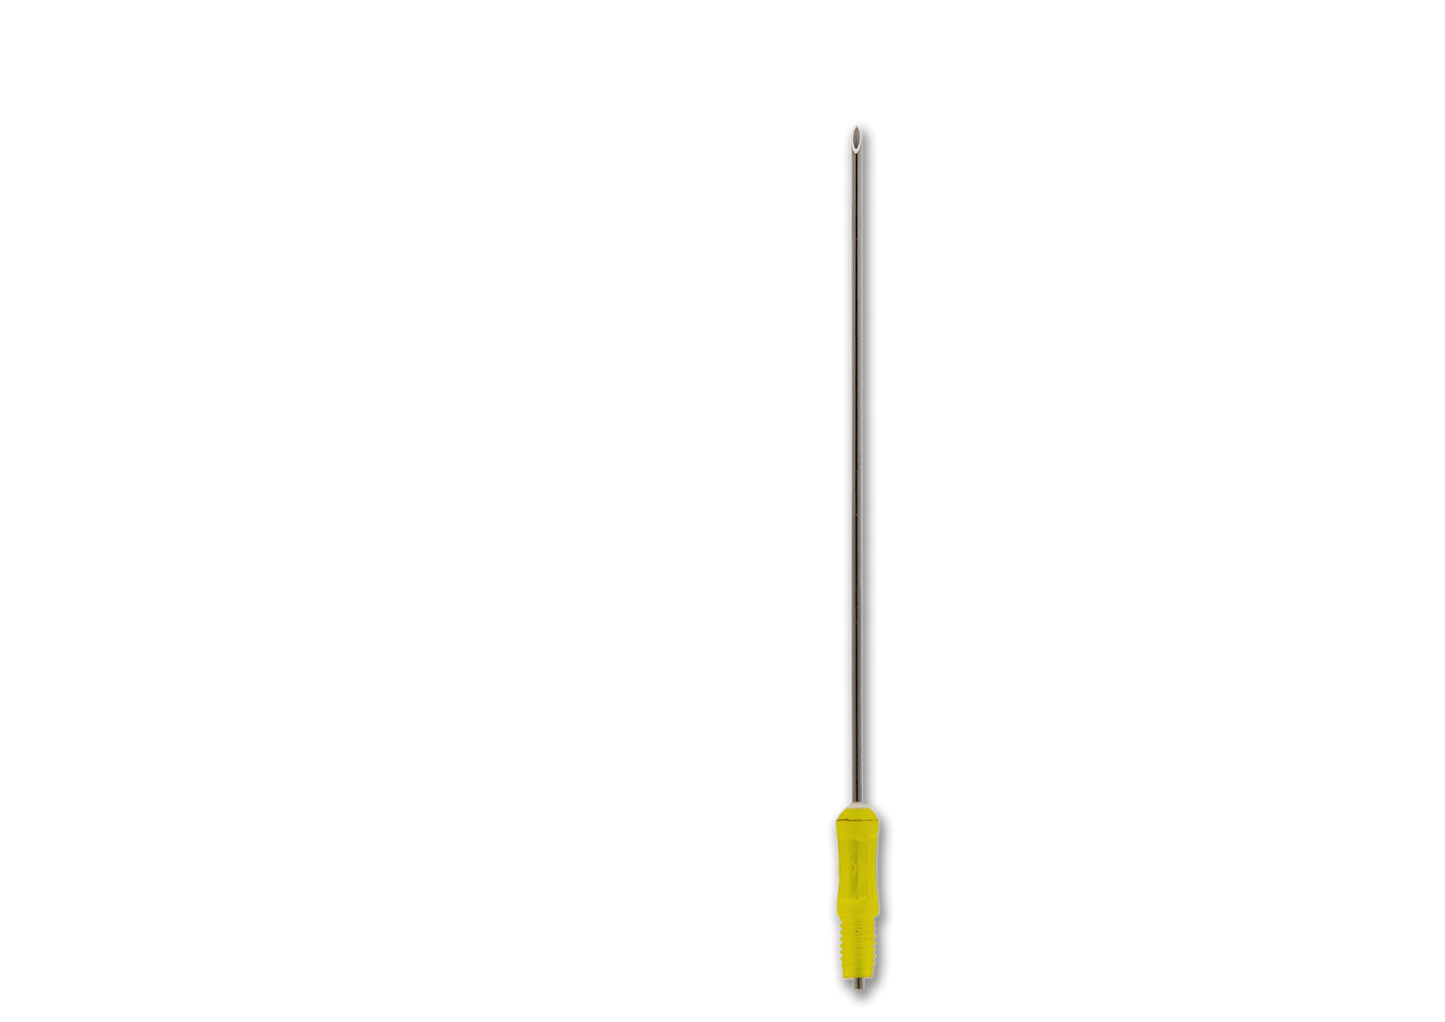 Needle for Aspiration (Threaded) 20G - Bovine